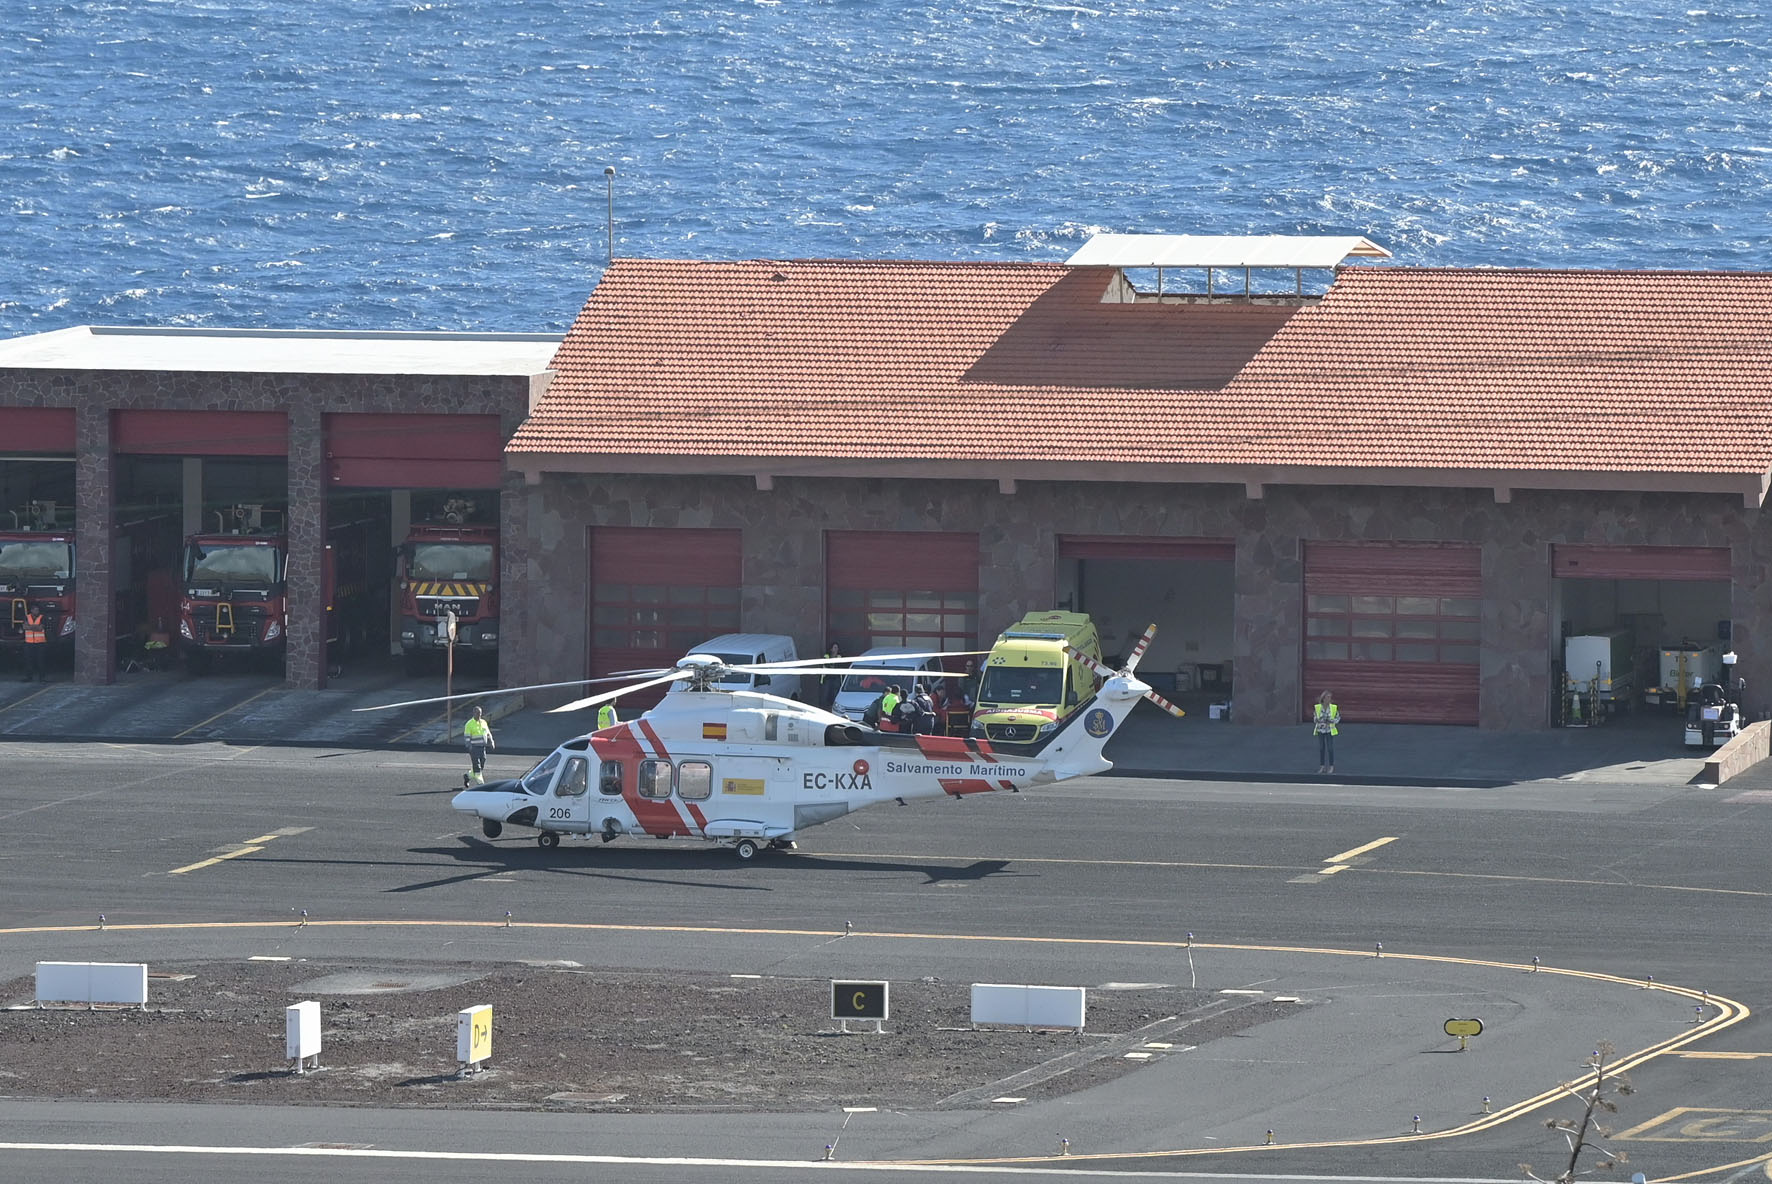 El helicóptero de Salvamento Marítimo, traslada a El Hierro a los 9 supervivientes de un cayuco localizado a 60 millas de la isla